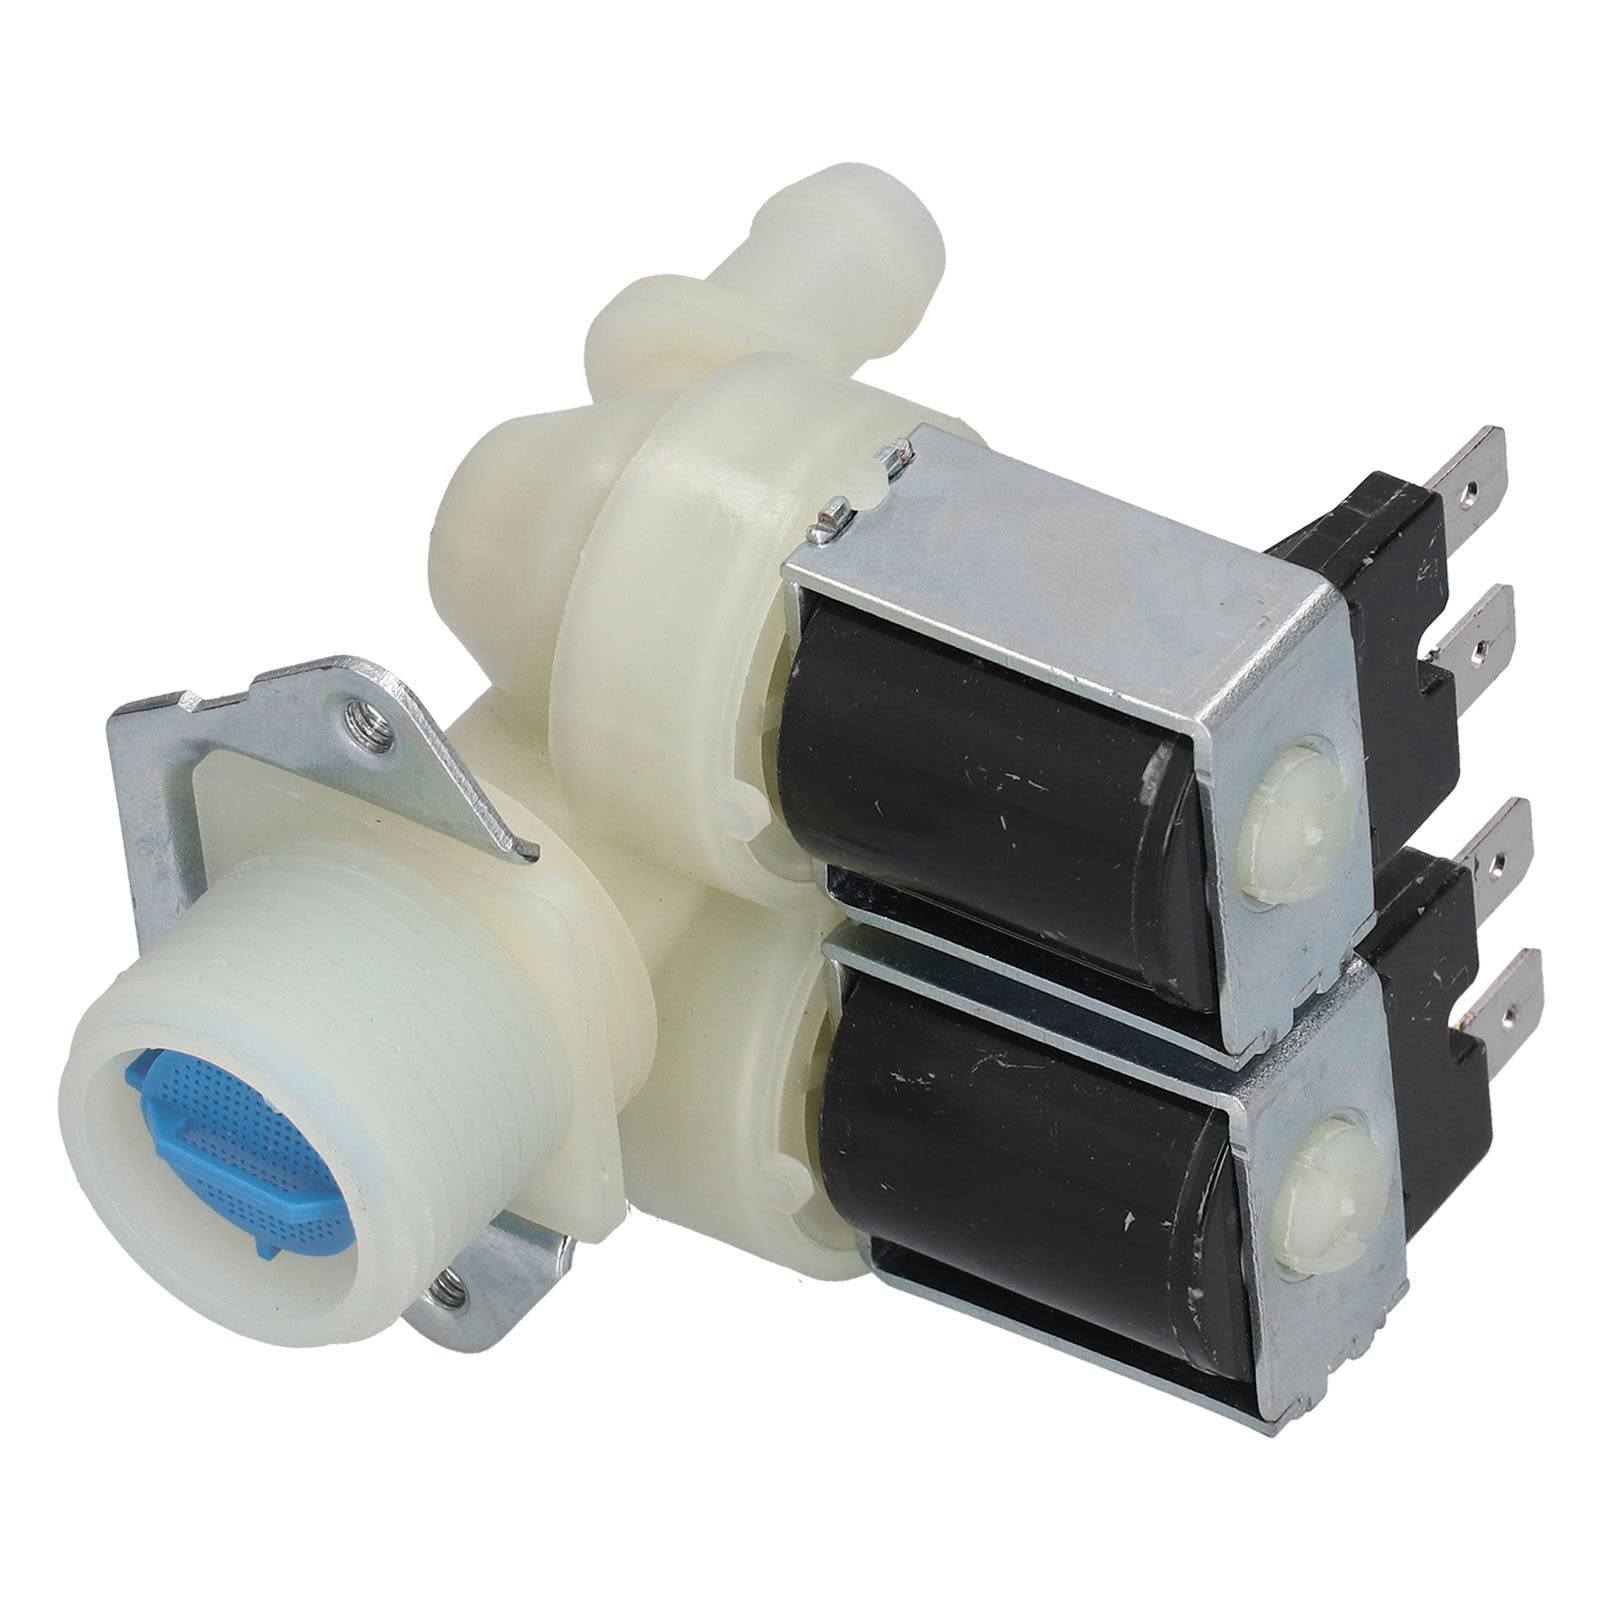 WMING Wassereinlassventil, Wassereinlass-Magnetventil AC220V-240V für automatische Waschmaschinen